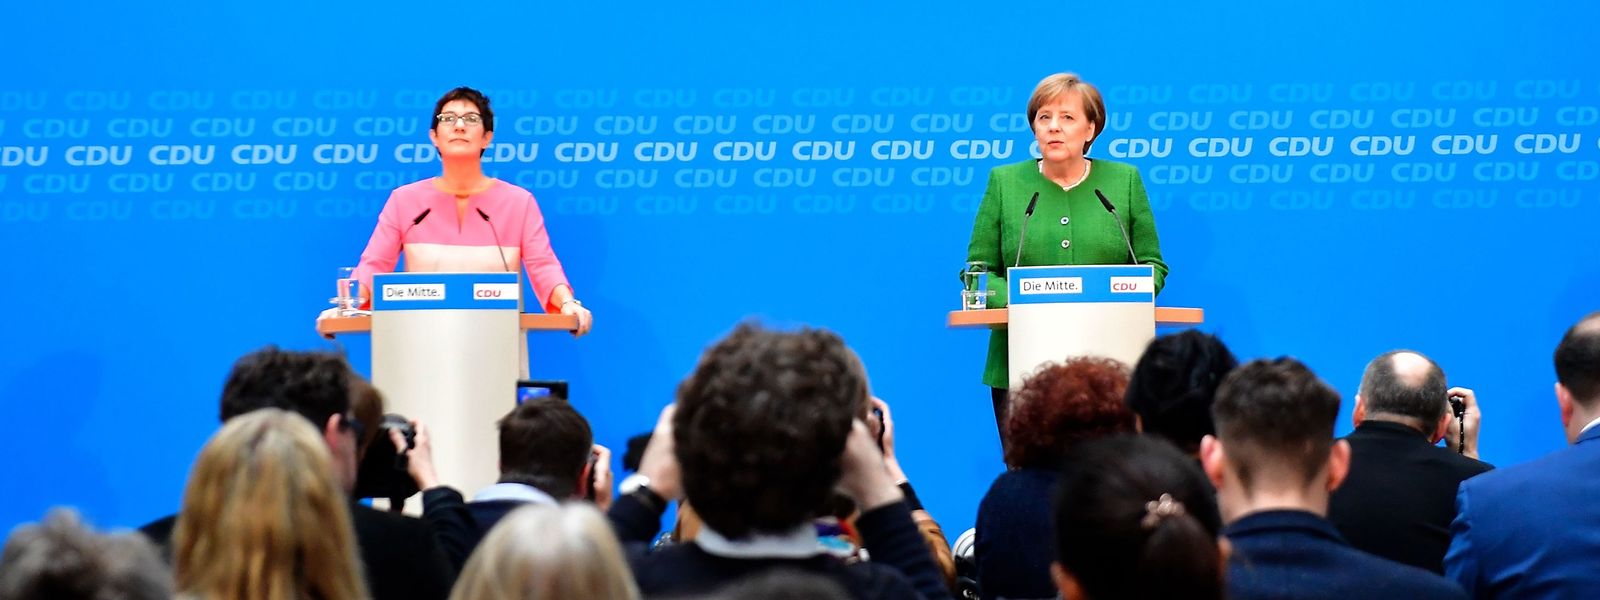 Loyalität zählt: Bundeskanzlerin Angela Merkel und die künftige CDU-Generalsekretärin Annegret Kramp-Karrenbauer